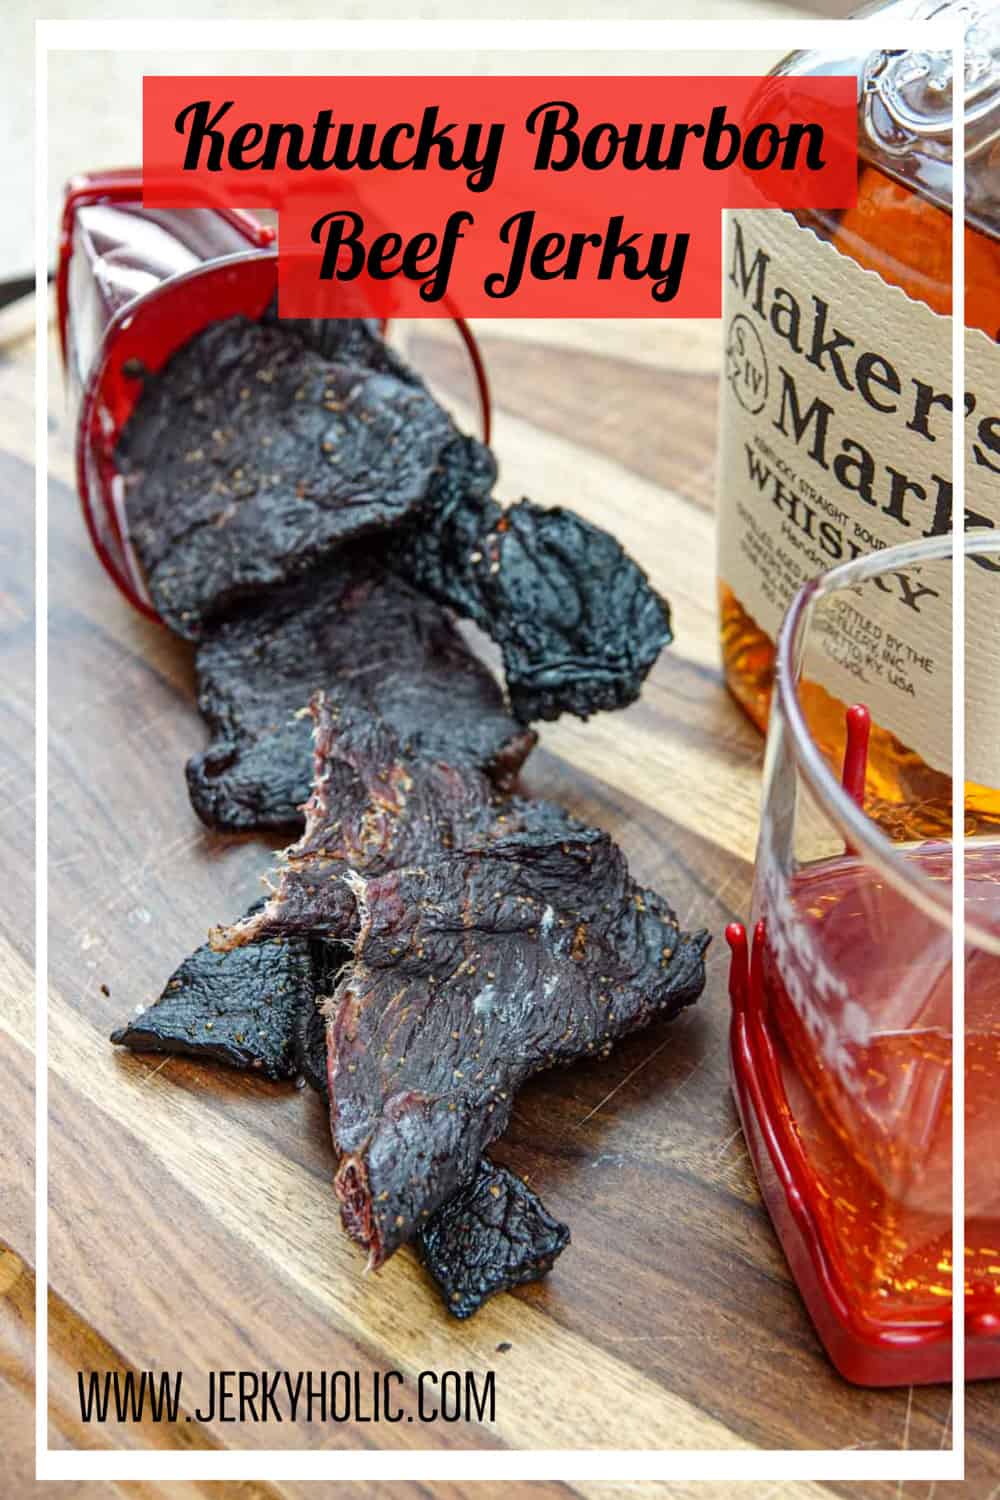 Kentucky Bourbon Beef Jerky